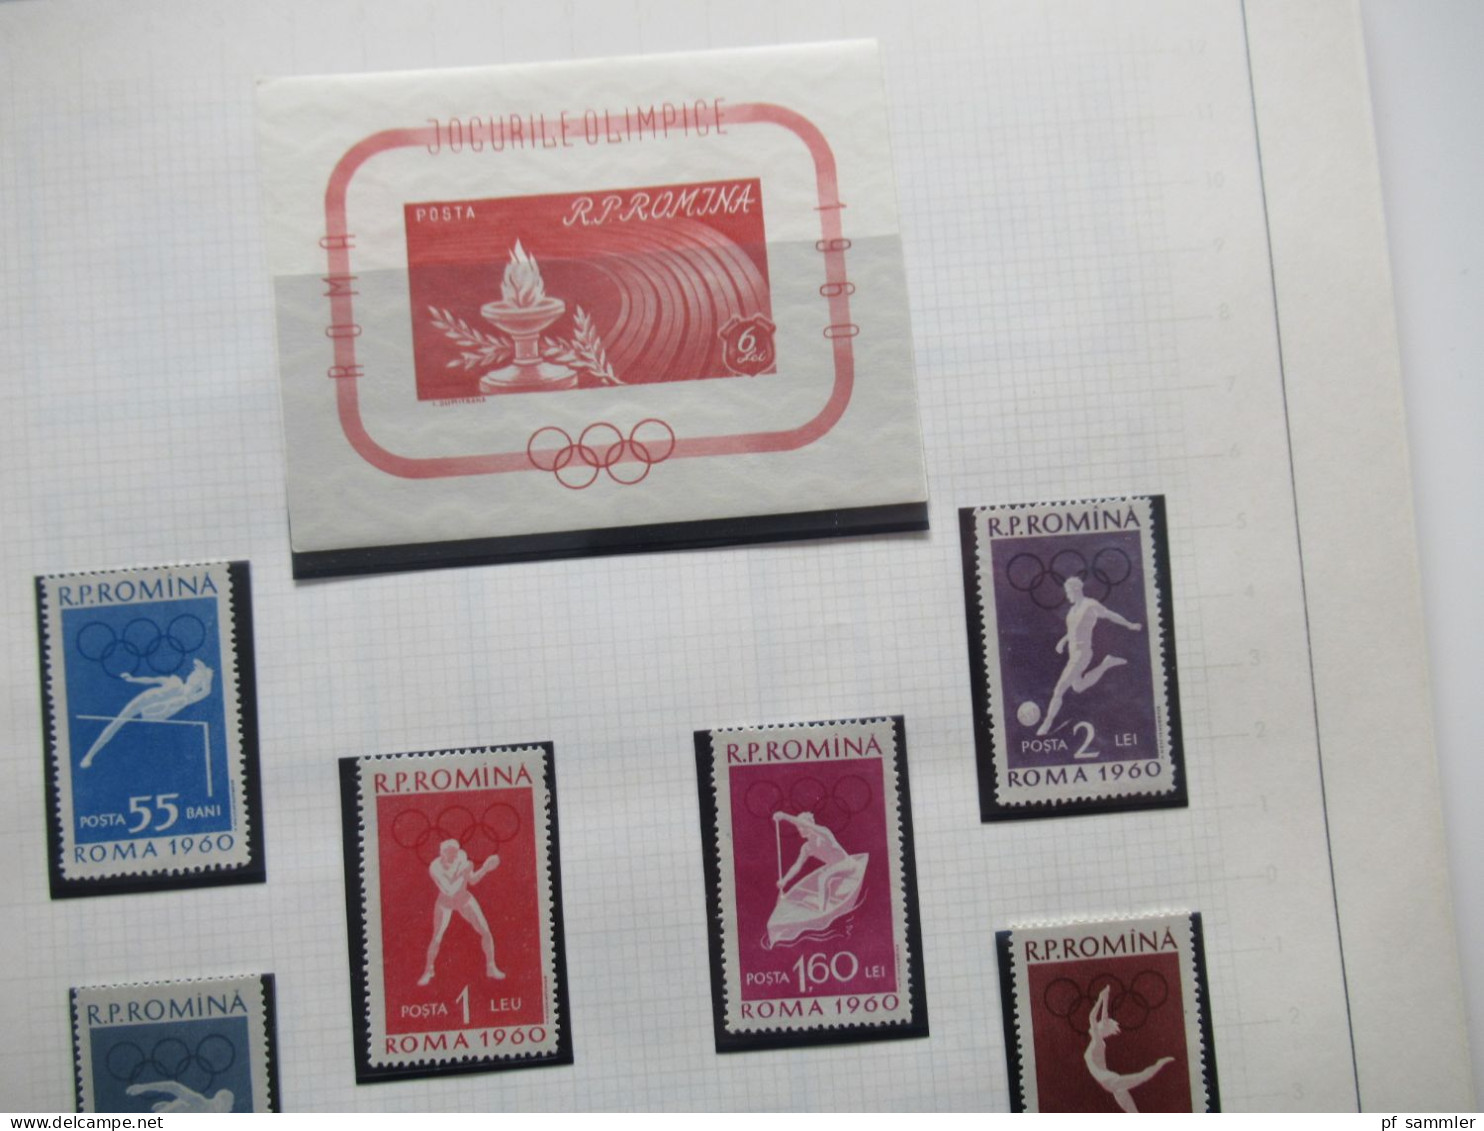 Tolle Motivsammlung Sport / Olympia mit Marken der 1960er Jahre! Auch etl. ungezähnte Ausgaben und 2x DR Olympia Block